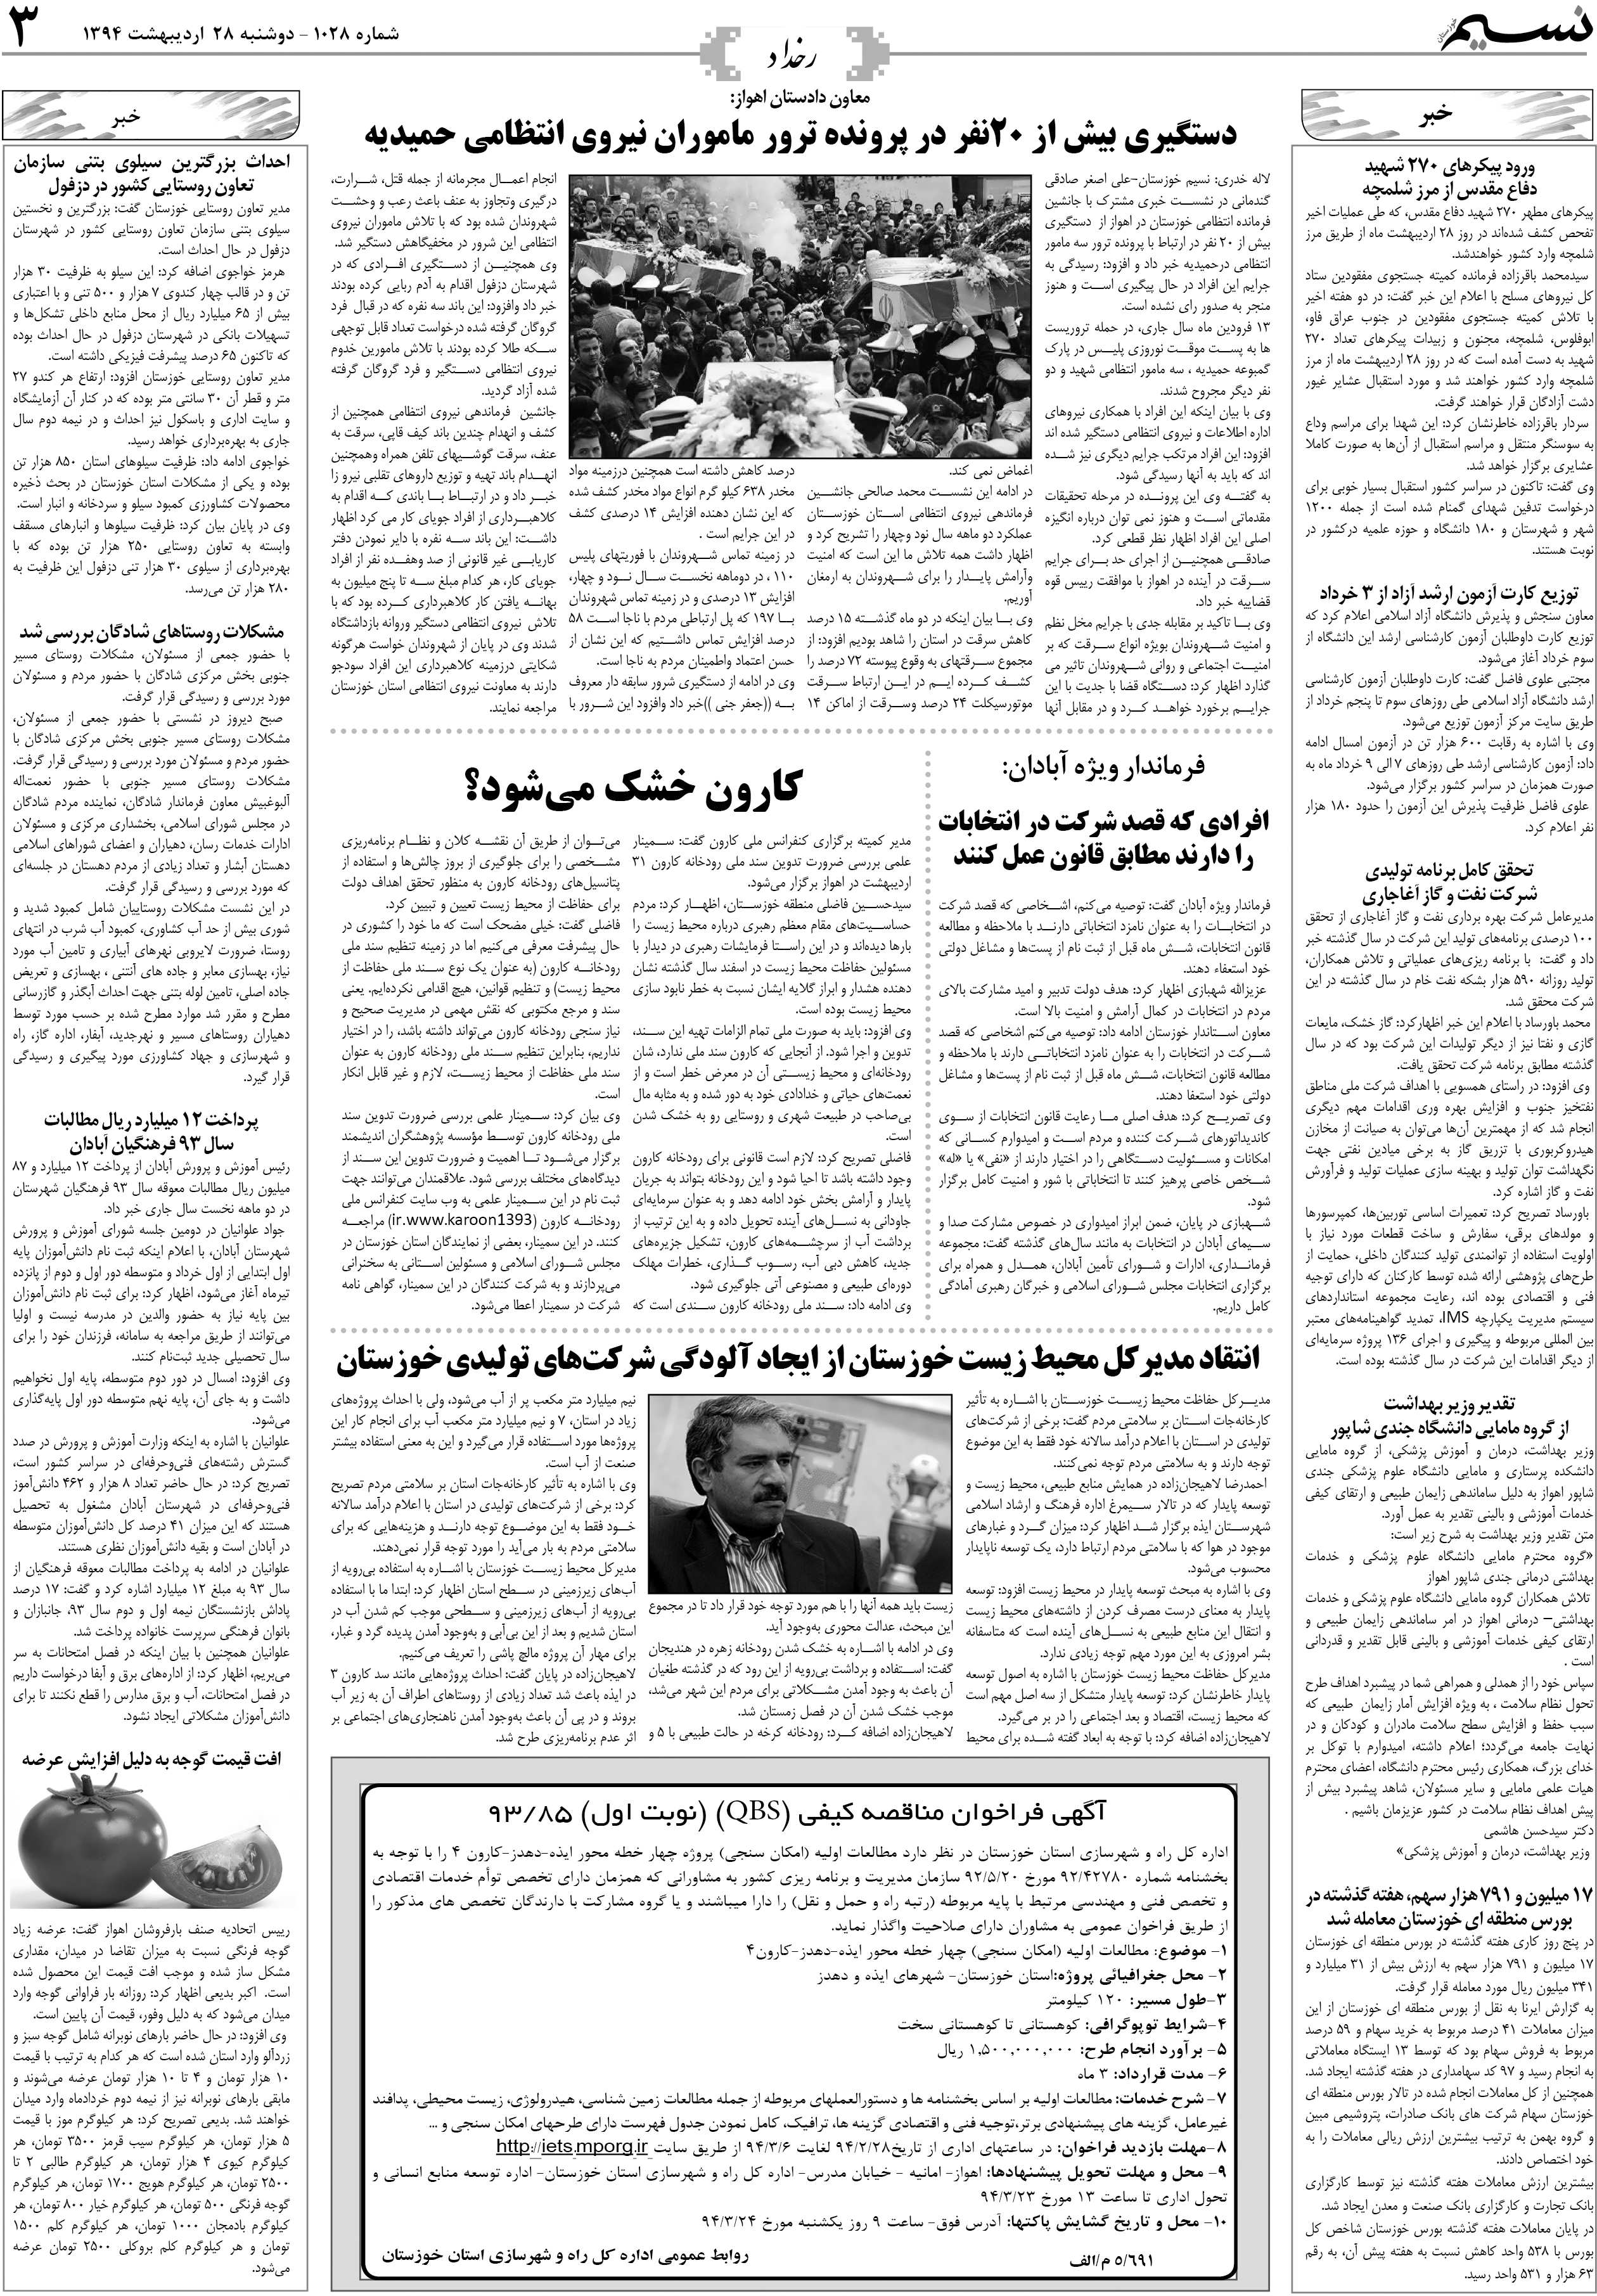 صفحه رخداد روزنامه نسیم شماره 1028